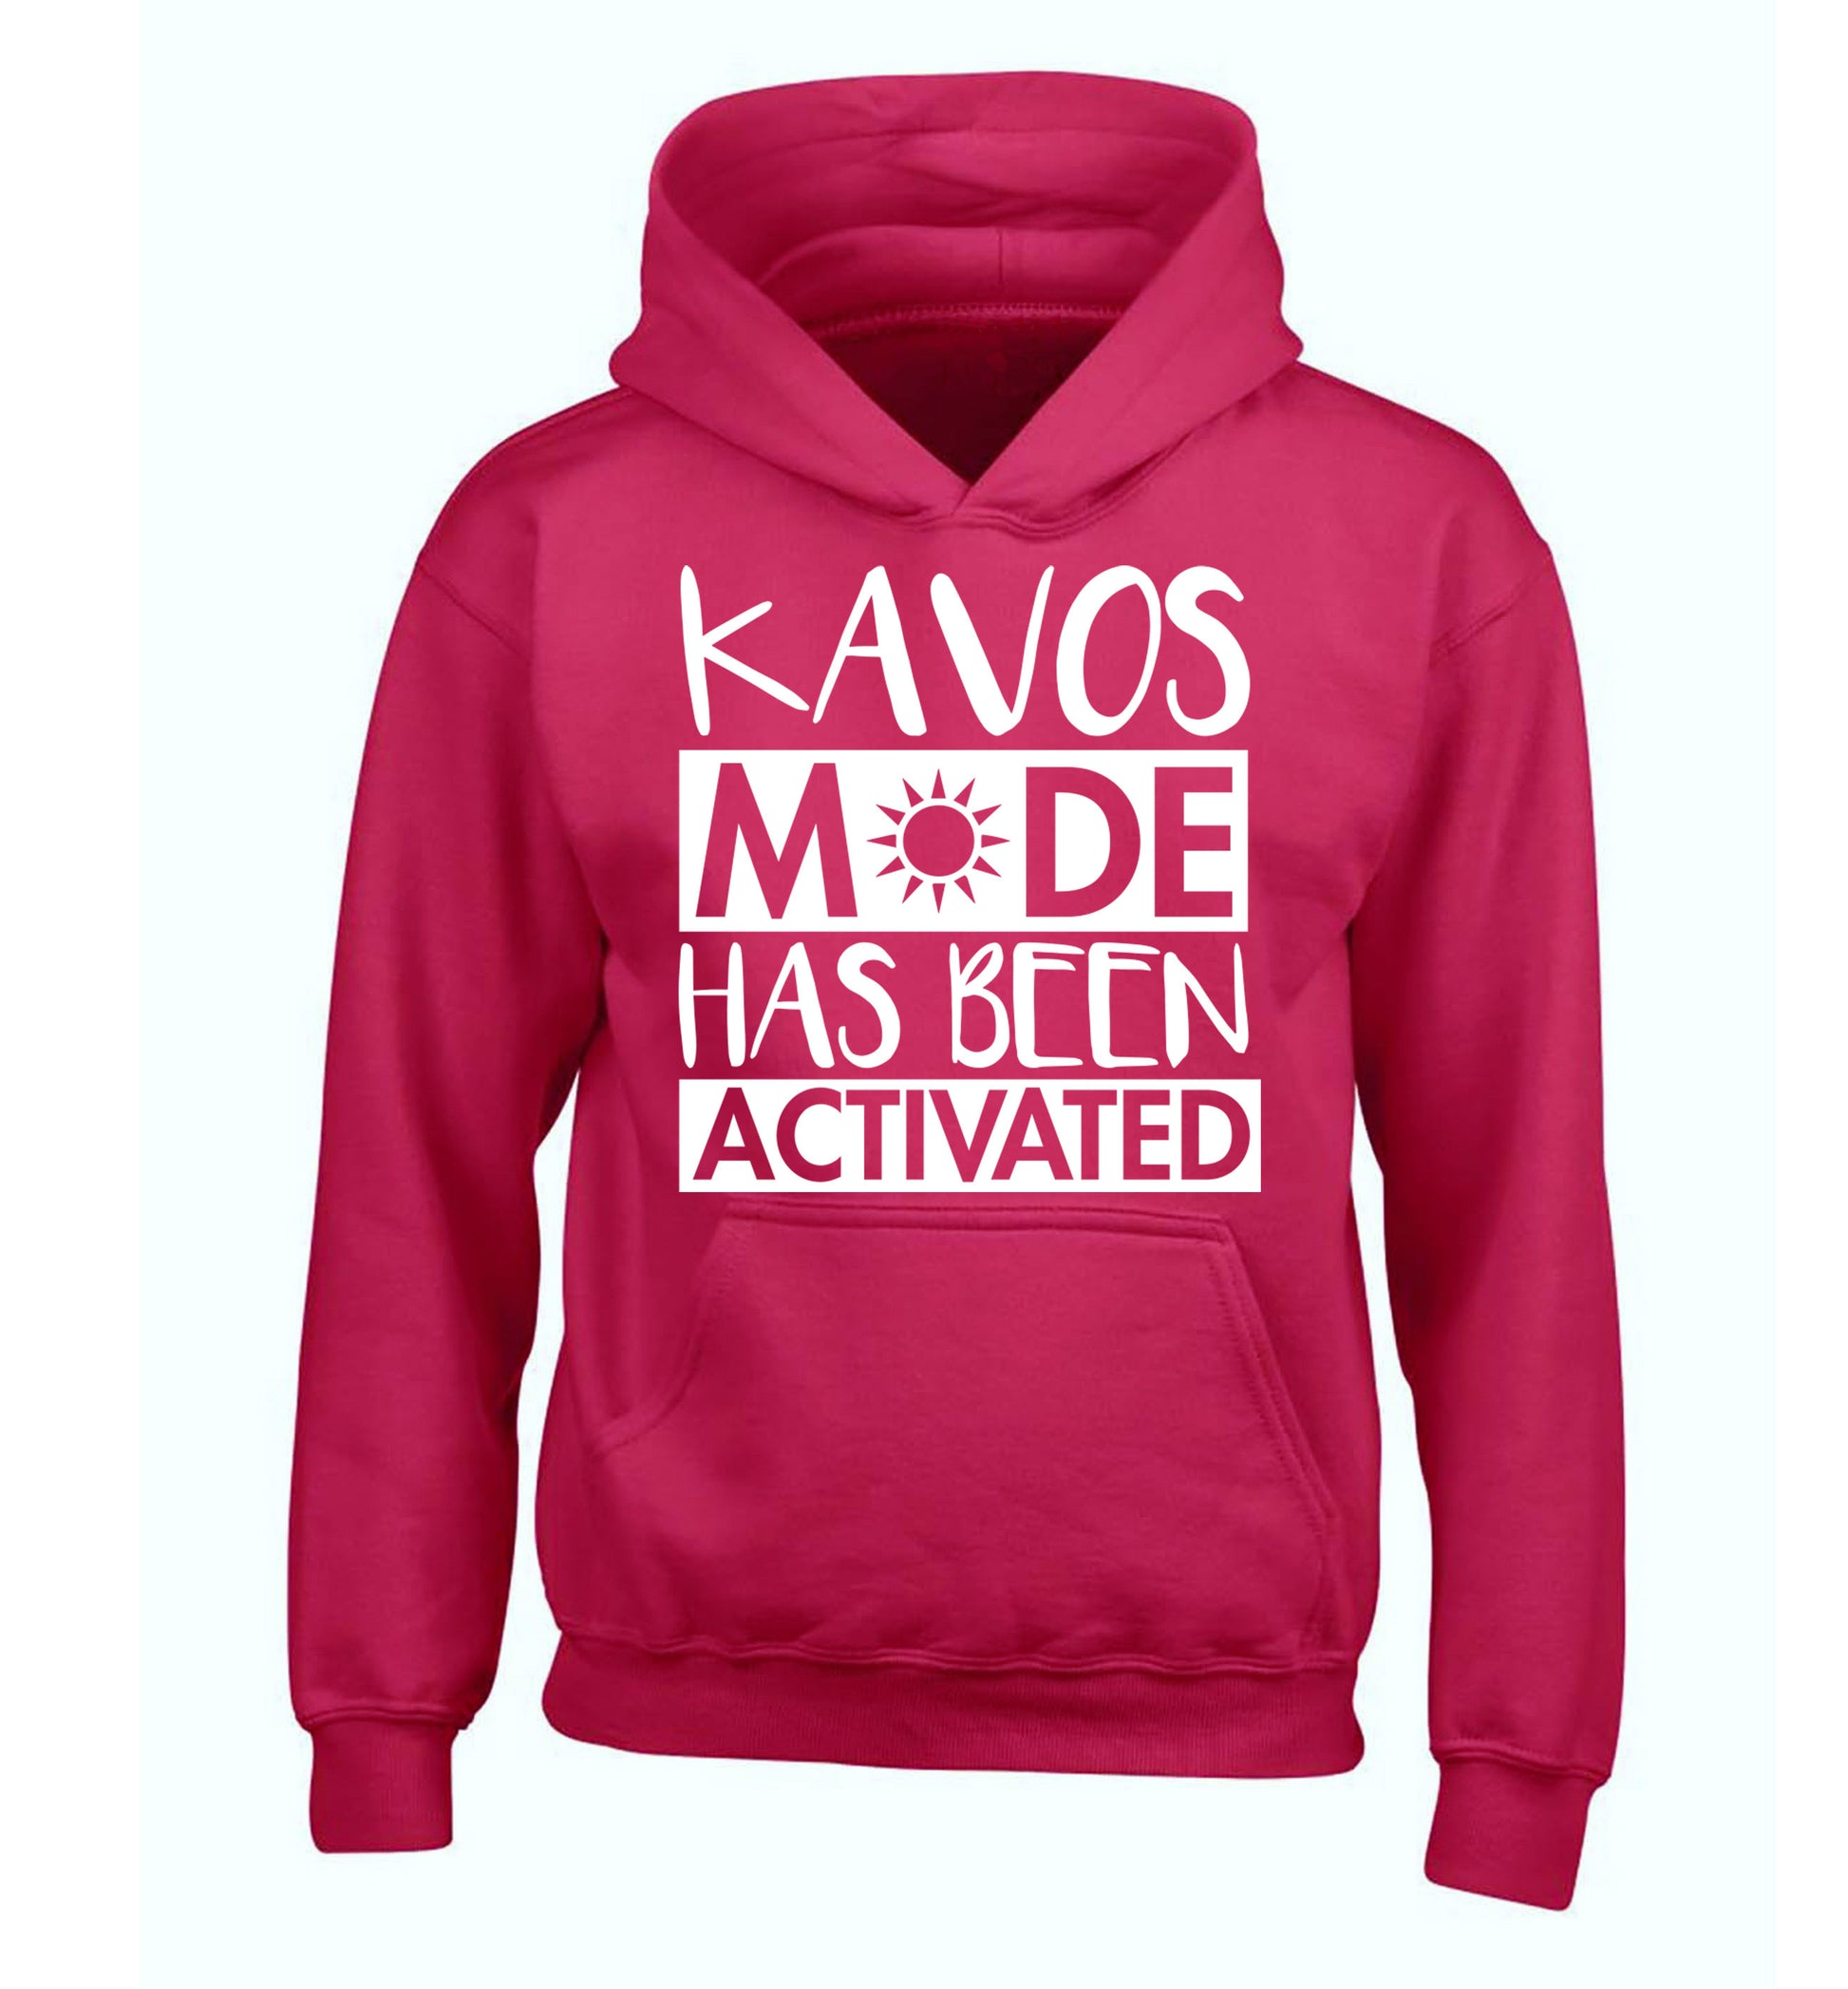 Kavos mode has been activated children's pink hoodie 12-14 Years